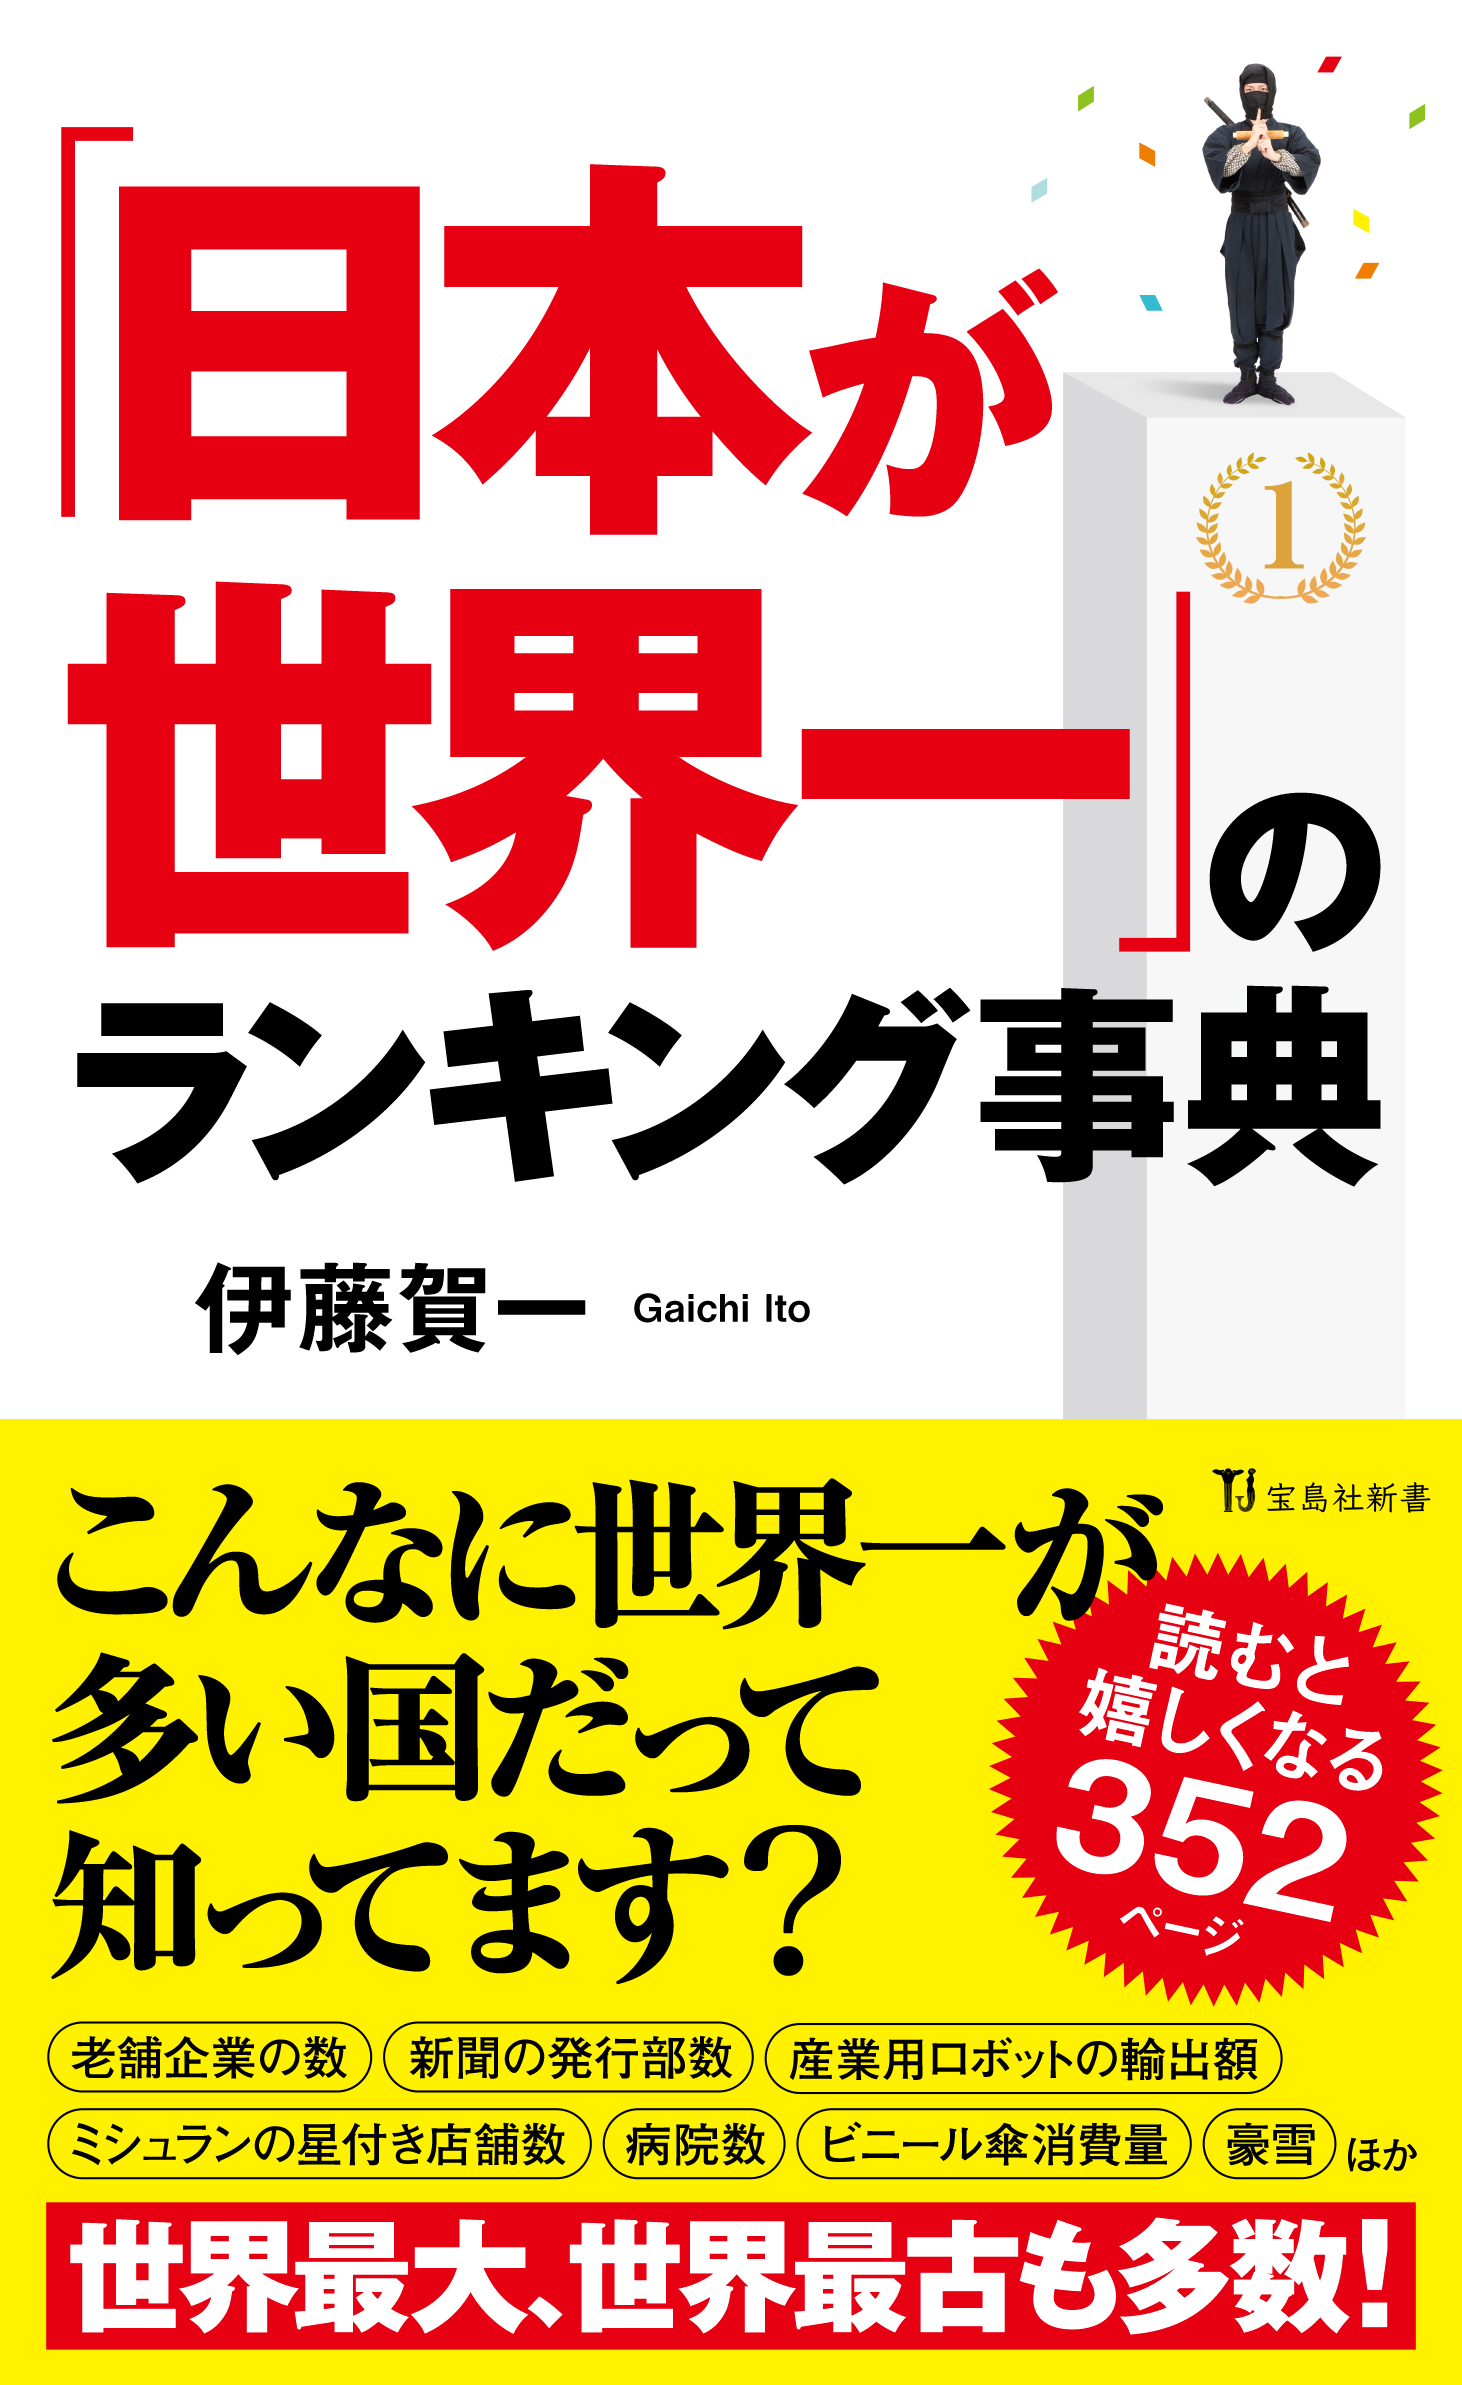 日本一生徒数の多い社会科講師が教える 日本が世界一 のランキング事典 4月10日発売 株式会社 宝島社のプレスリリース